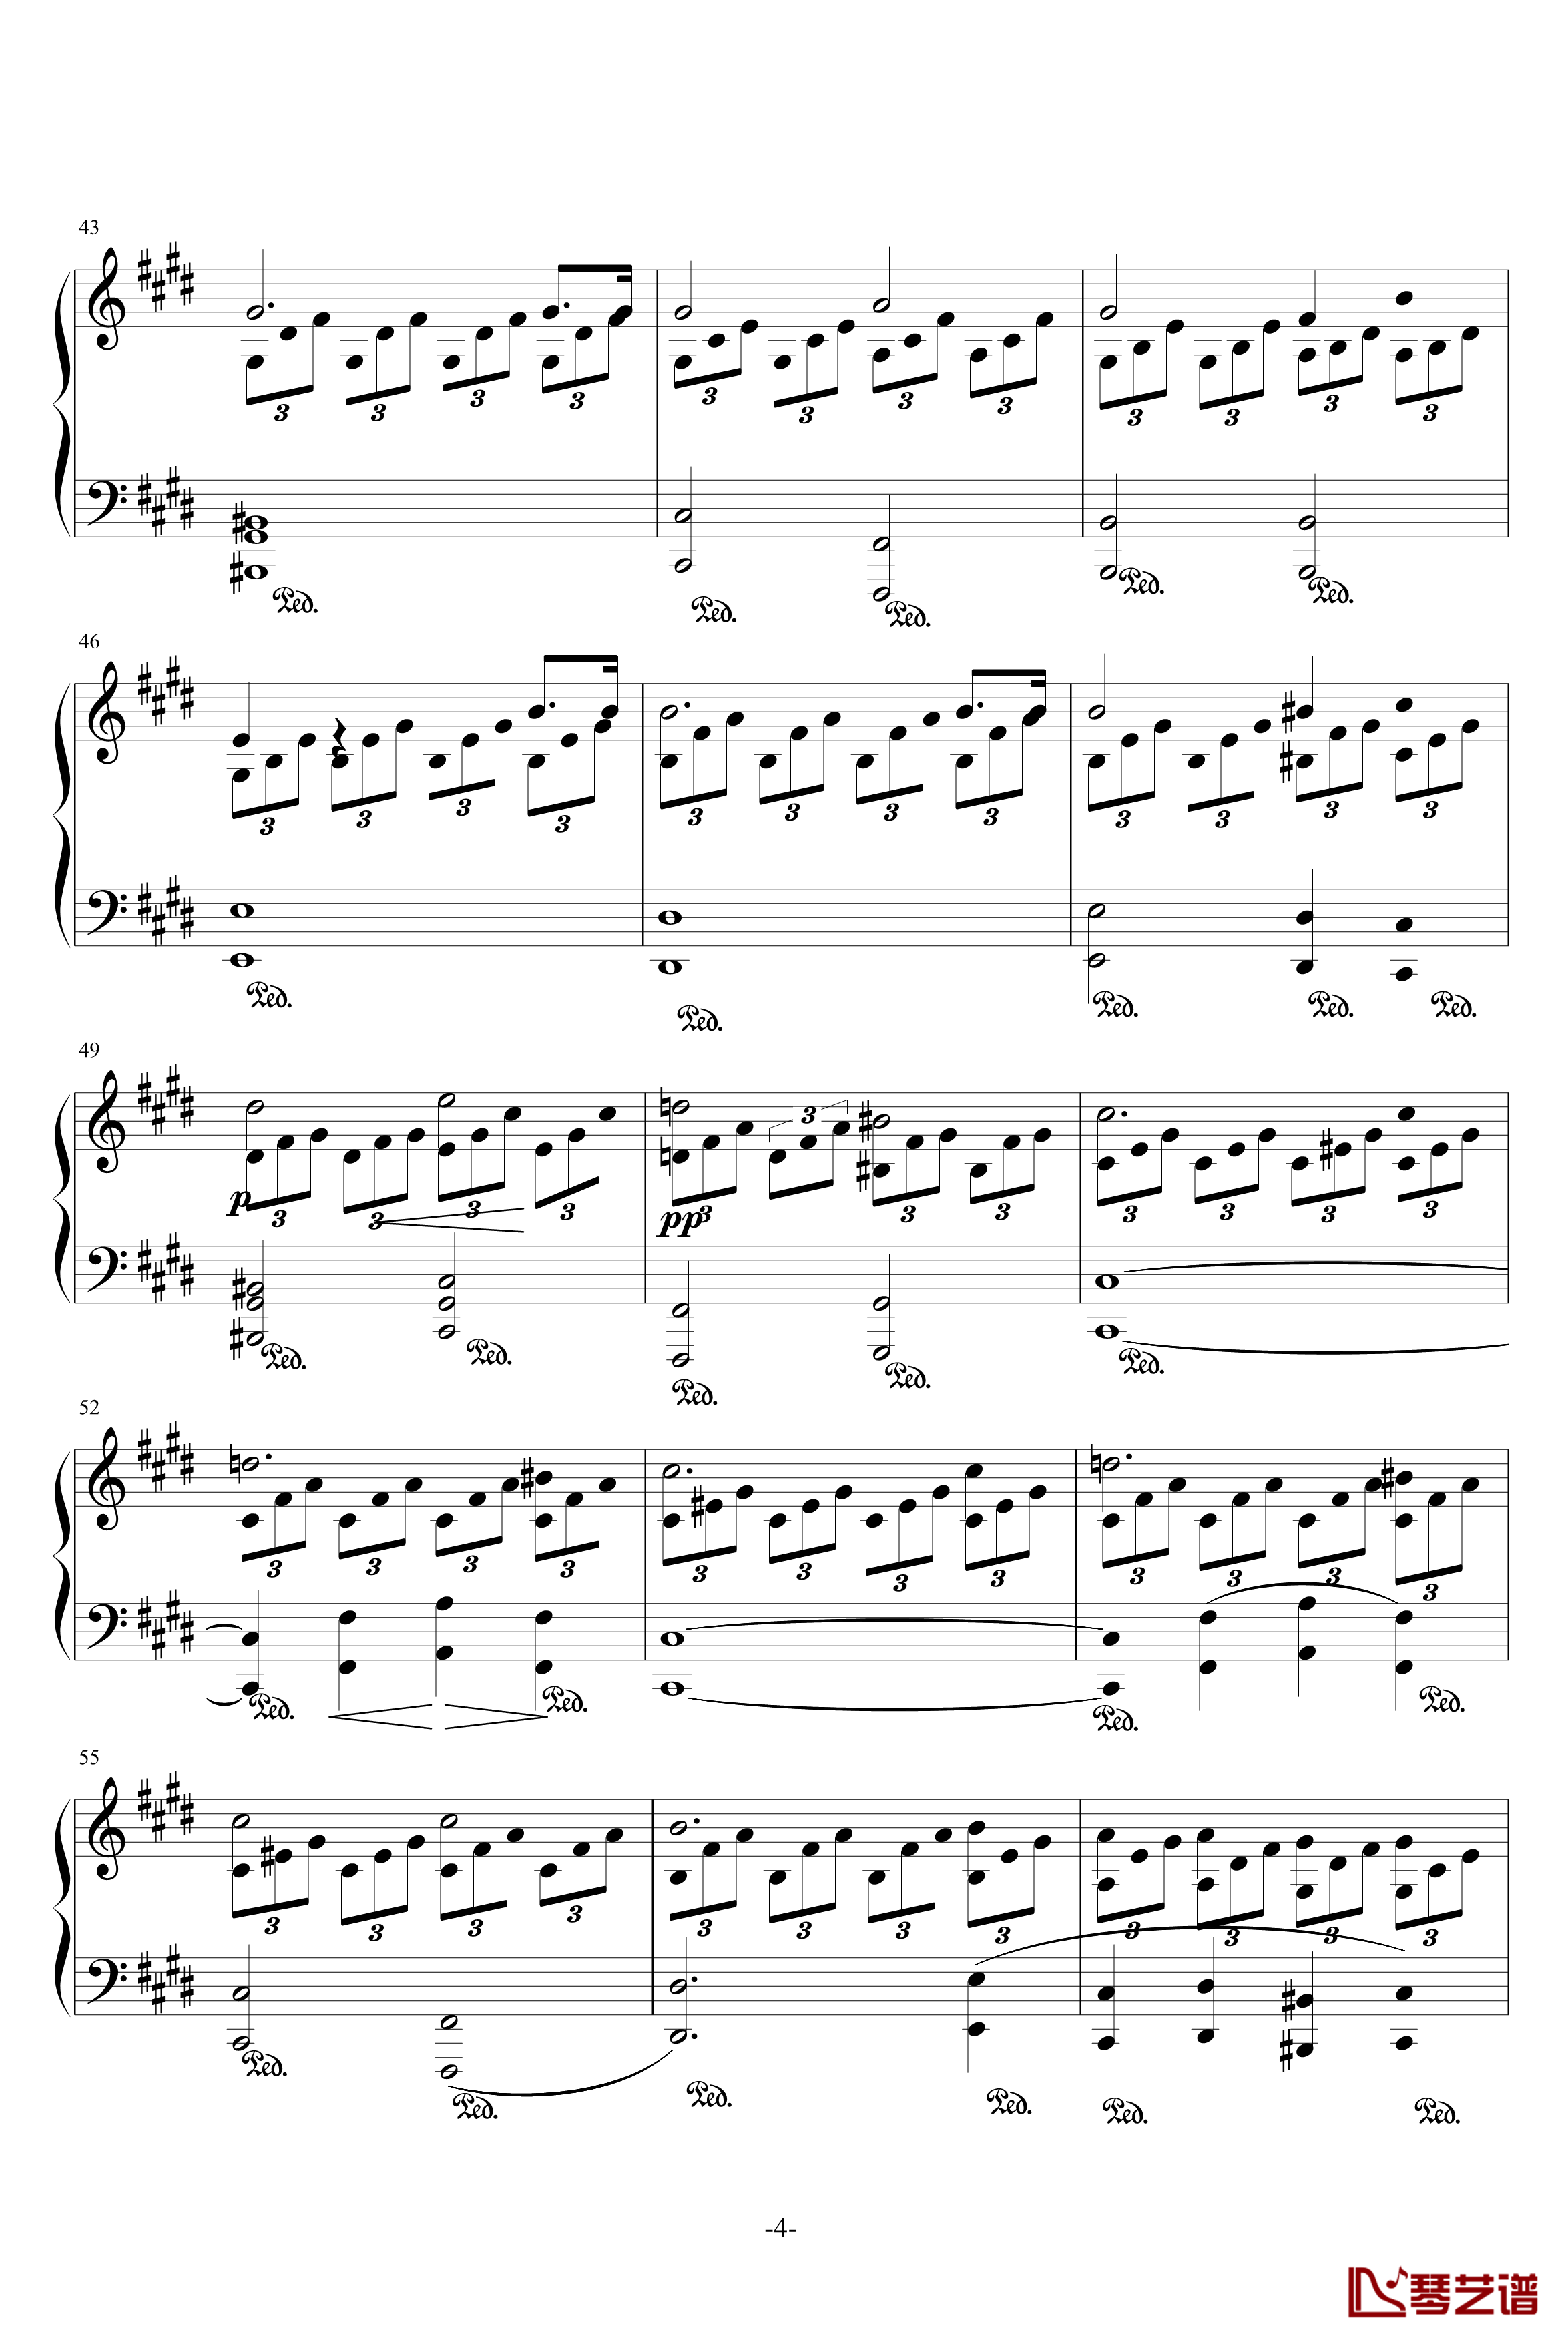 月光奏鸣曲钢琴谱-1，2，3乐章-贝多芬-beethoven4